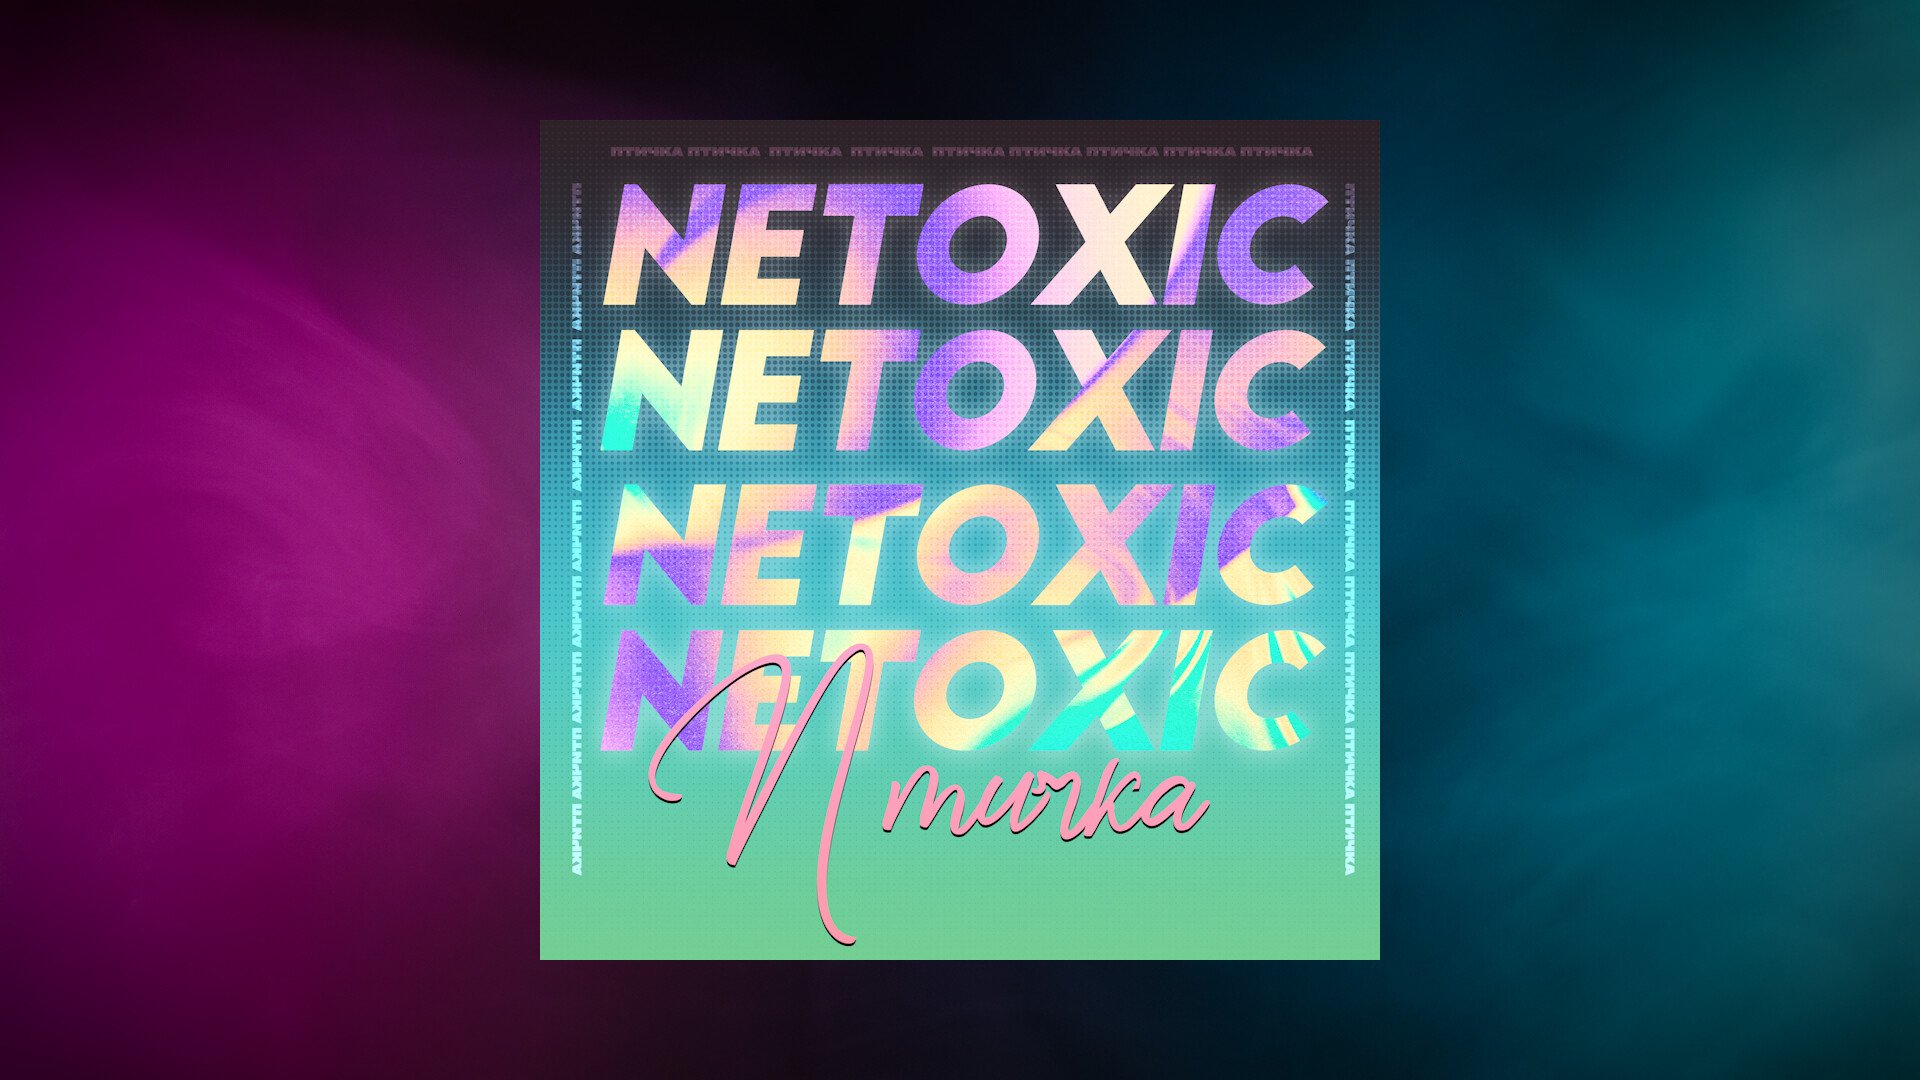 Netoxic. Netoxic певица. Птичка Lyrics Video. Netoxic мокро. Под ником netoxic.